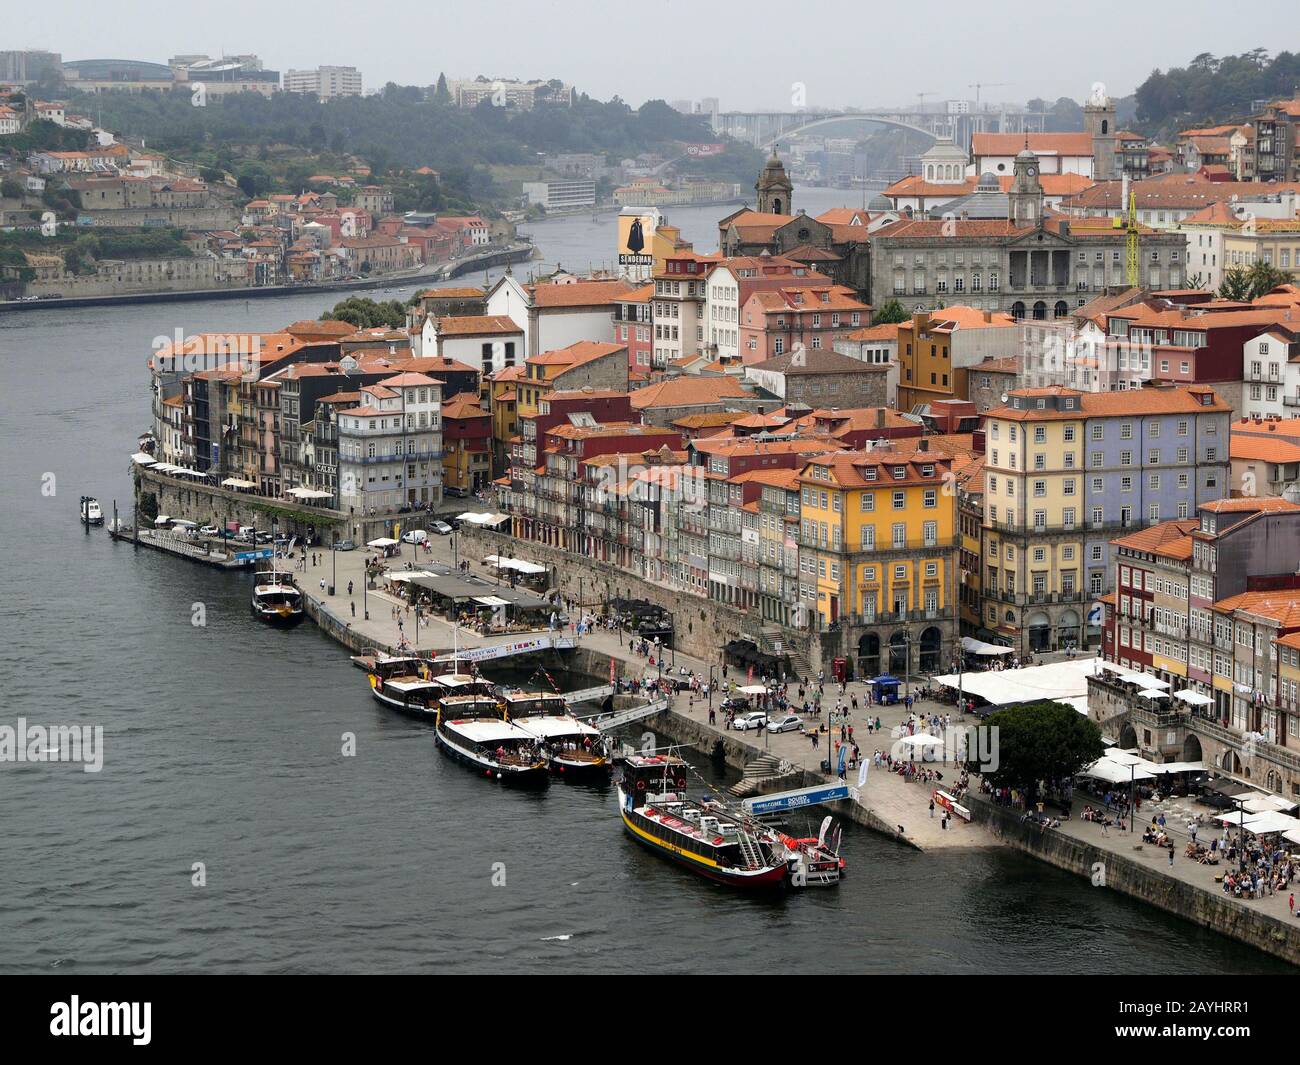 Partie du centre historique de Porto, Portugal, avec des bateaux touristiques sur le fleuve Douro Banque D'Images